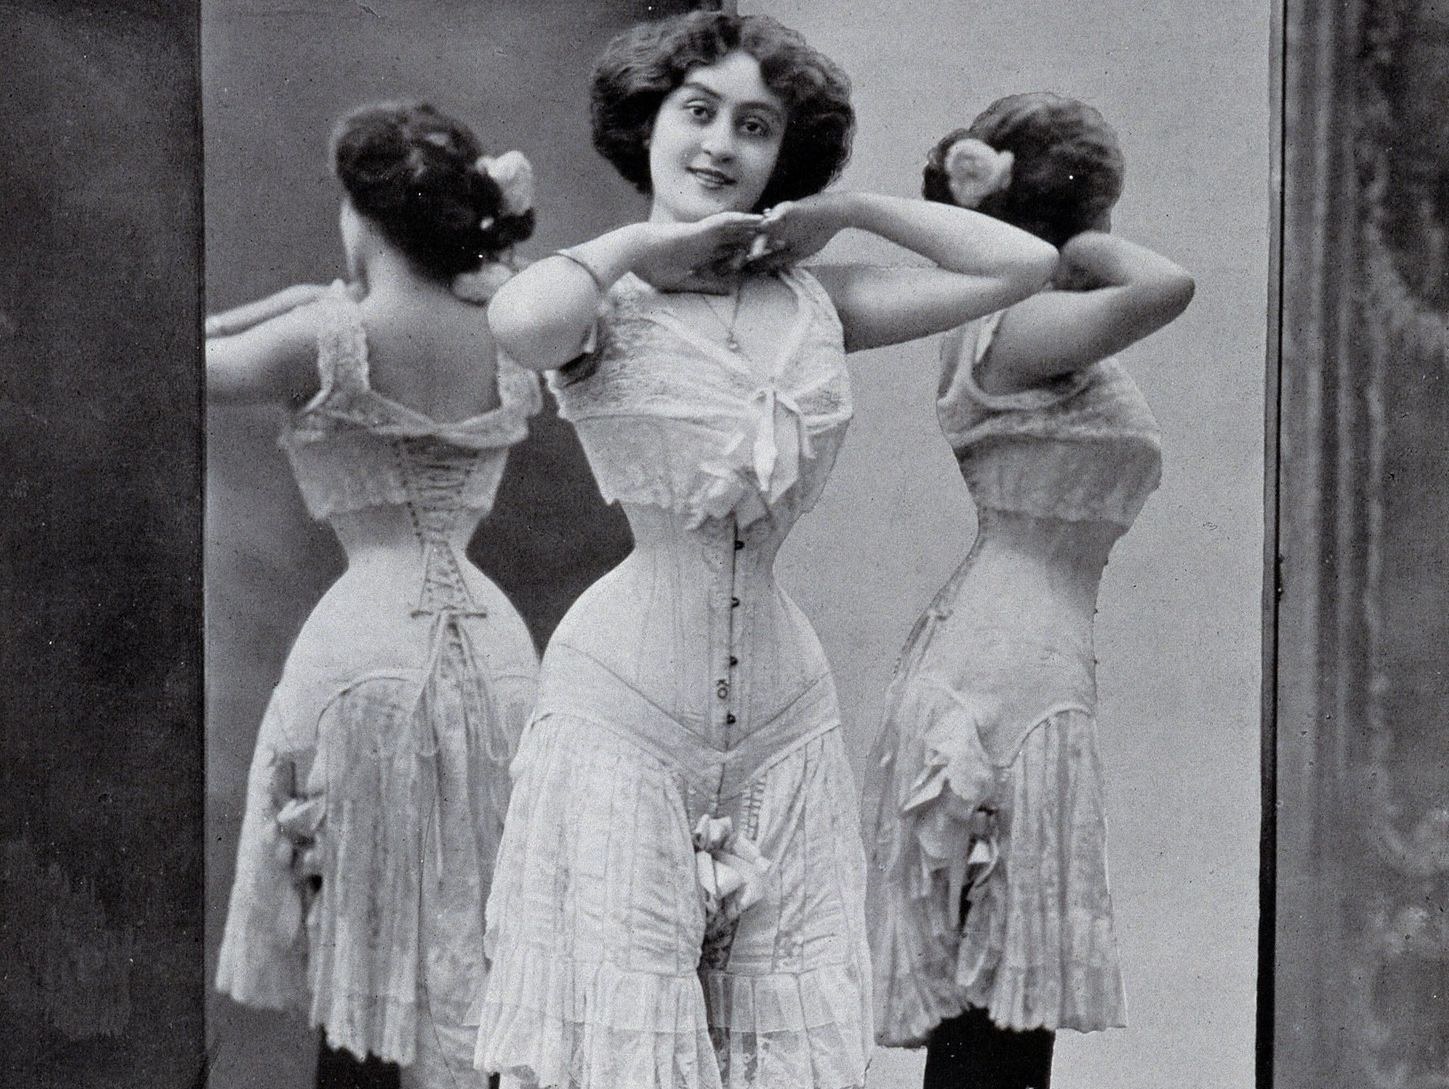 https://pichunter.club/uploads/posts/2022-12/1671232445_61-pichunter-club-p-erotica-of-a-beauty-in-a-corset-68.jpg